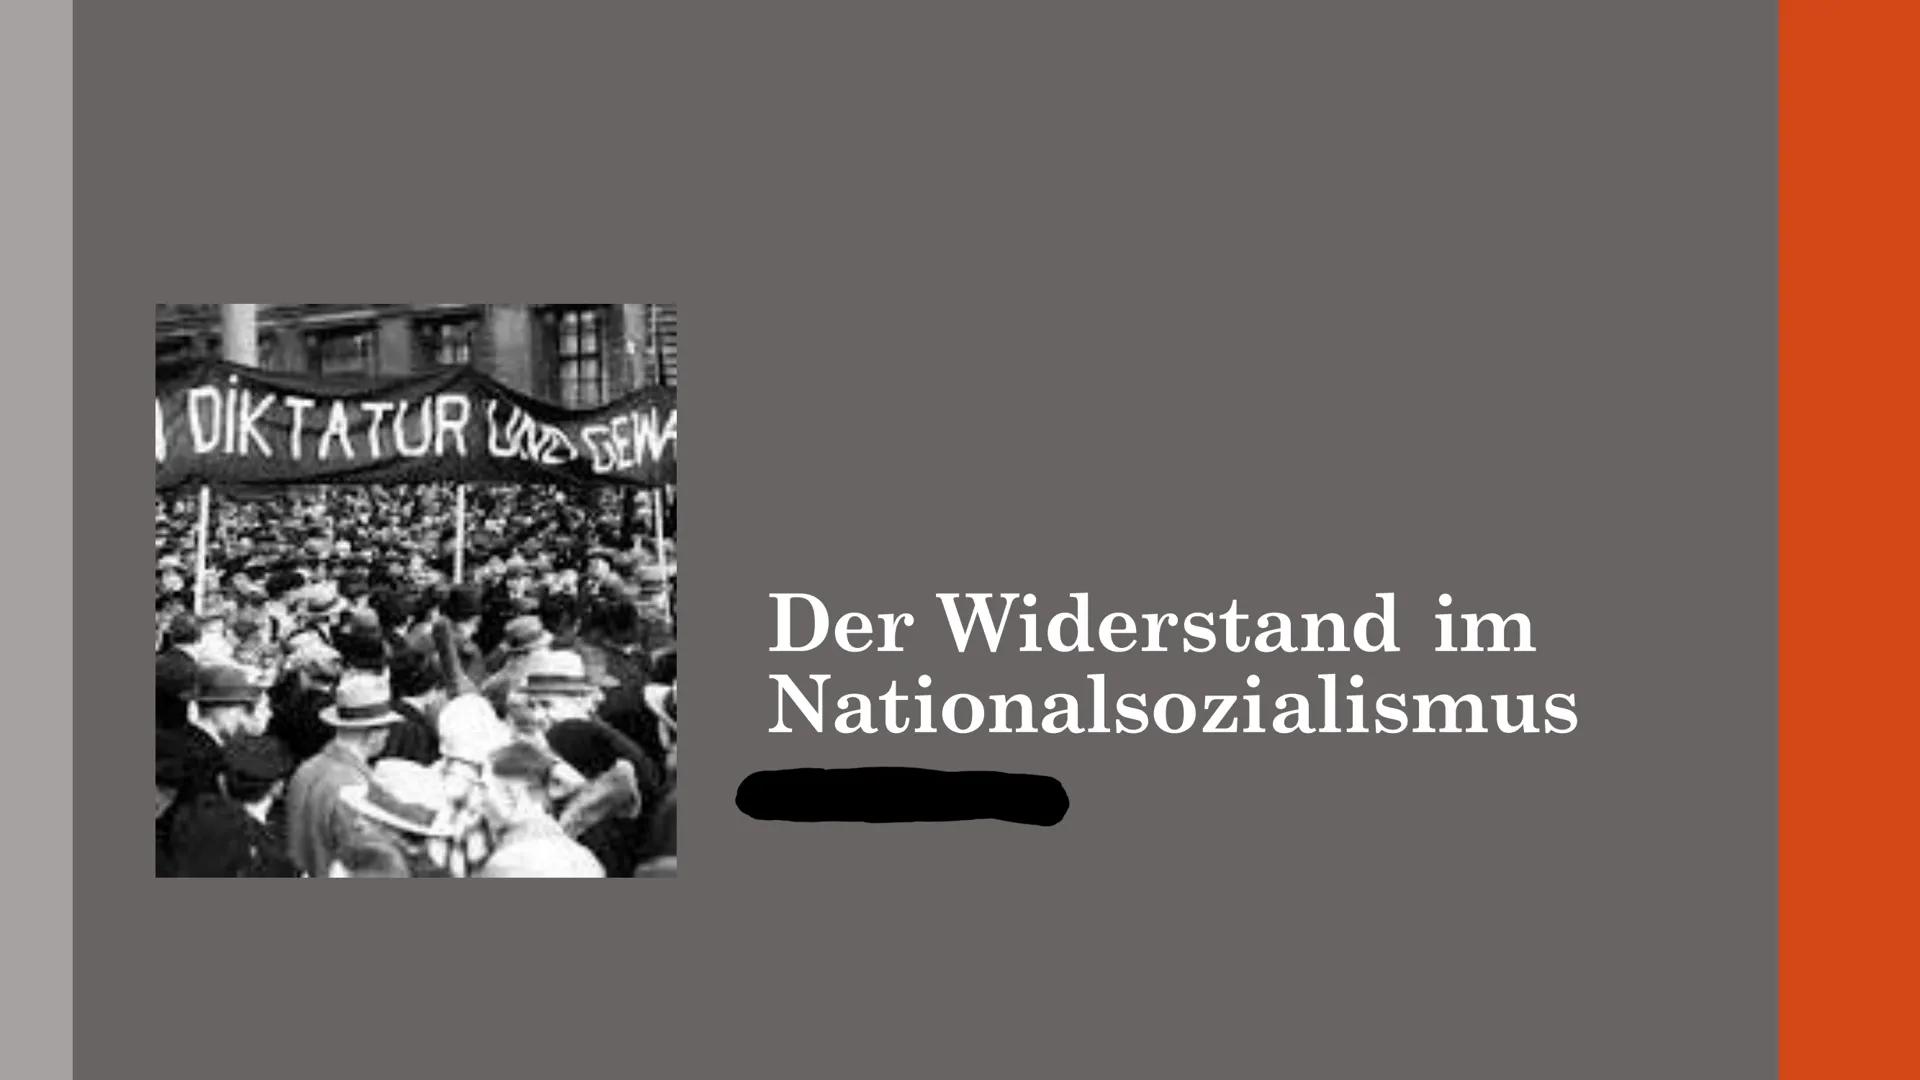 DIKTATUREN
Der Widerstand im
Nationalsozialismus Inhaltsverzeichnis
1. Grundaussage
2. Wie gewann Hitler solch großen Zuspruch vom deutschen